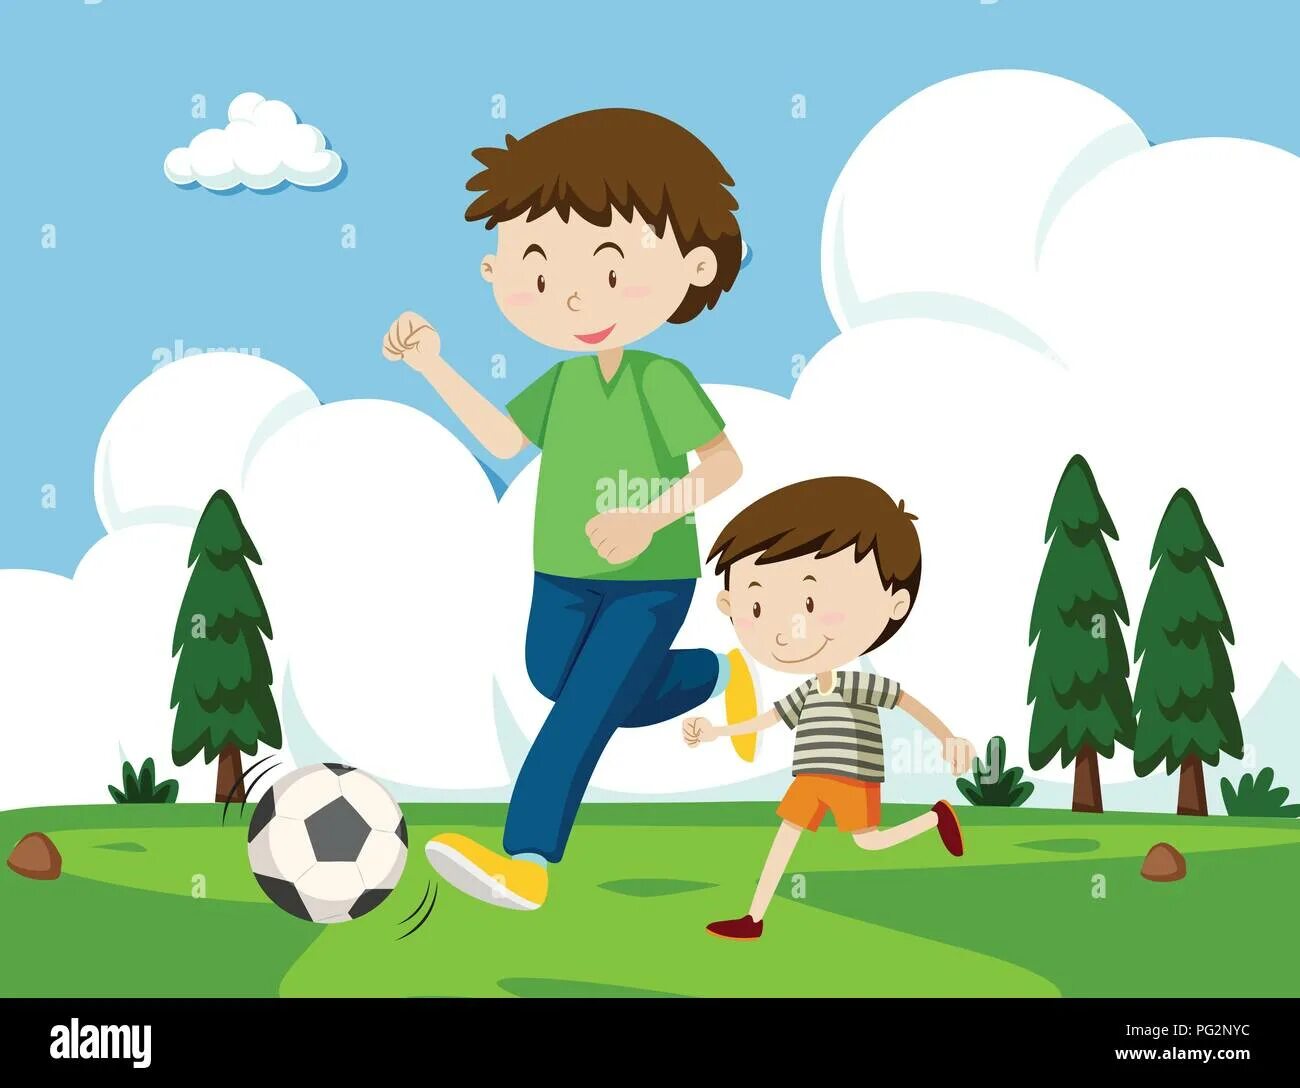 Детская иллюстрация папа и сын. Папа играет в футбол иллюстрация. Папа с ребенком играют в футбол. Сюжетная картина футбол для детей. Папы играют в футбол